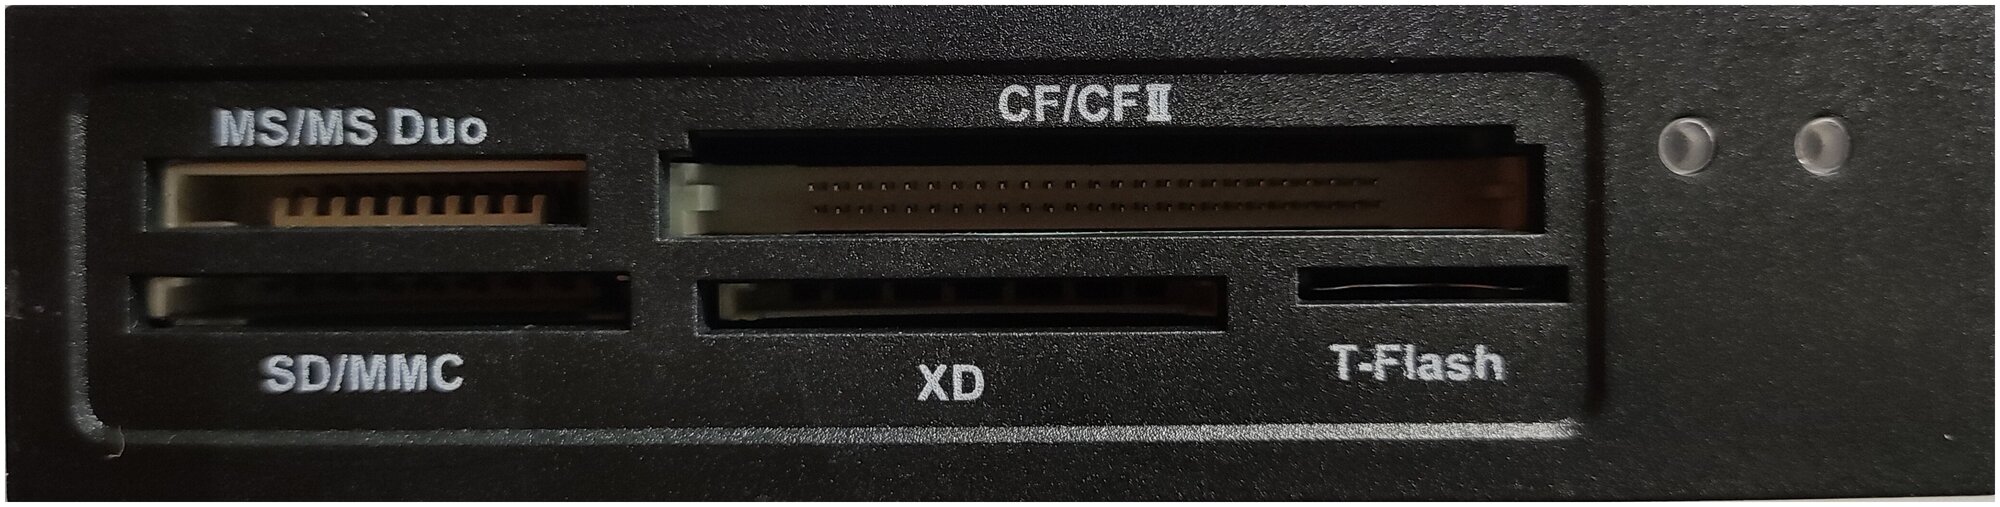 Внутренний картридер Foxline CR-302F / SD miniSD xD-Picture MMC (OEM)